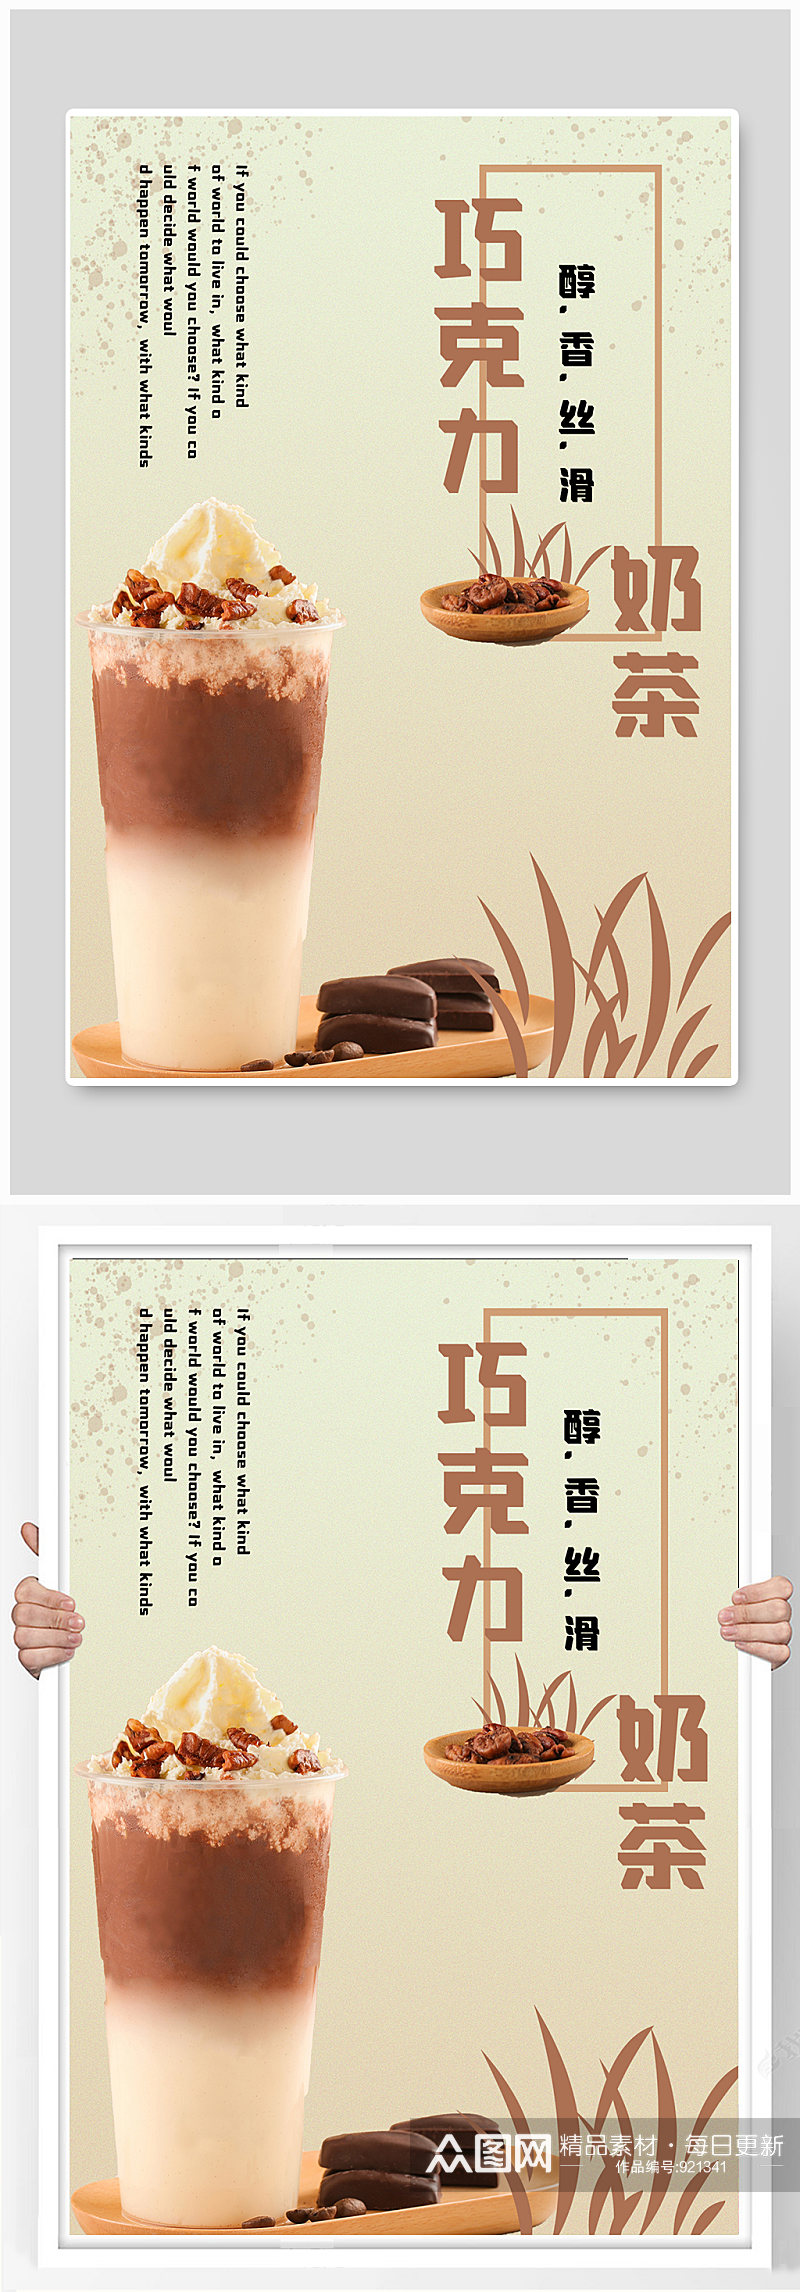 巧克力咖啡奶茶文艺宣传海报素材